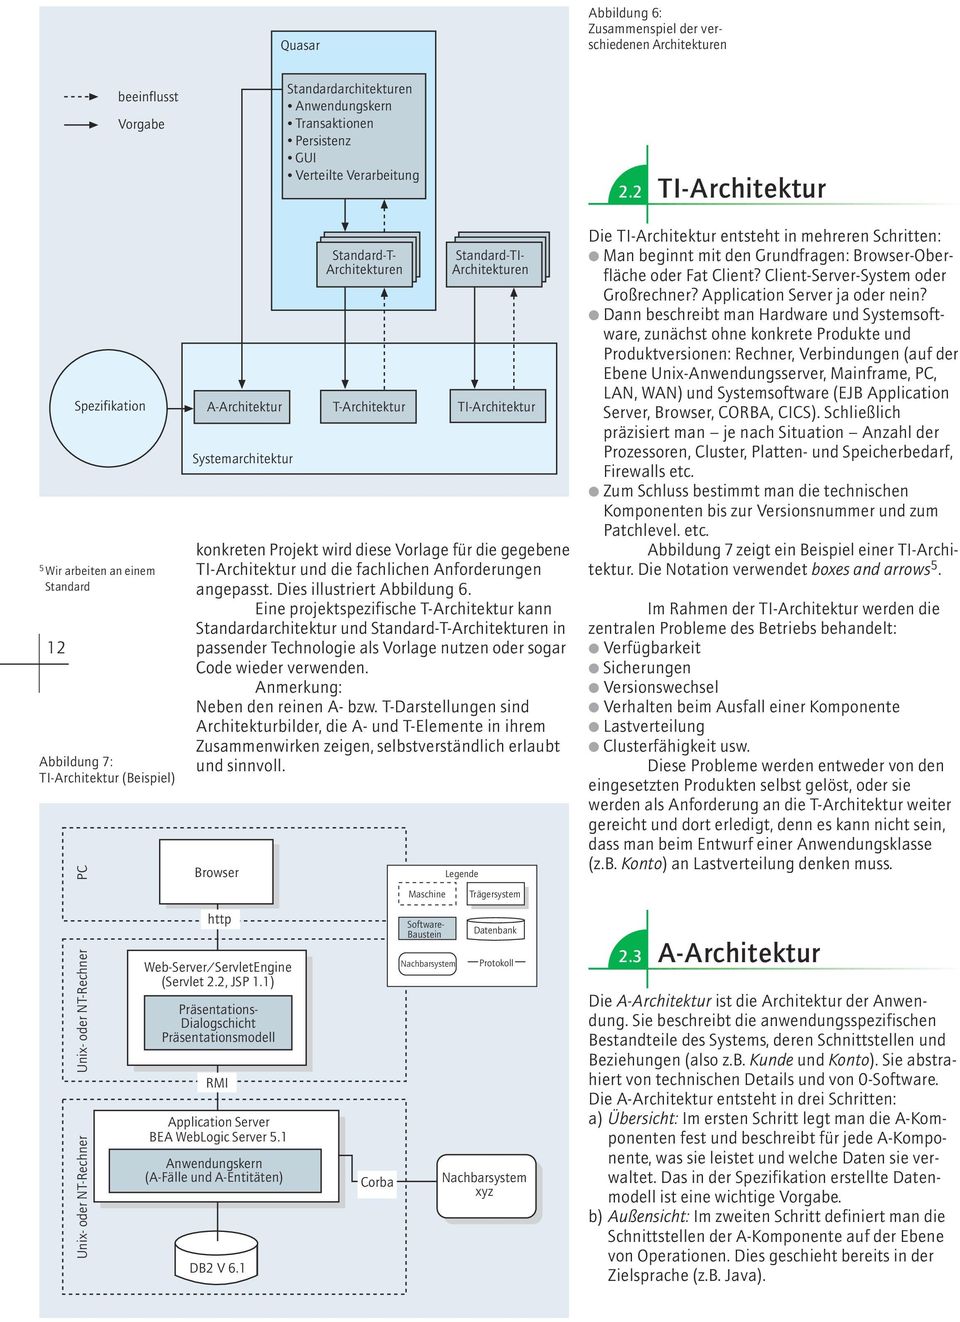 TI-Architektur konkreten Projekt wird diese Vorlage für die gegebene TI-Architektur und die fachlichen Anforderungen angepasst. Dies illustriert Abbildung 6.